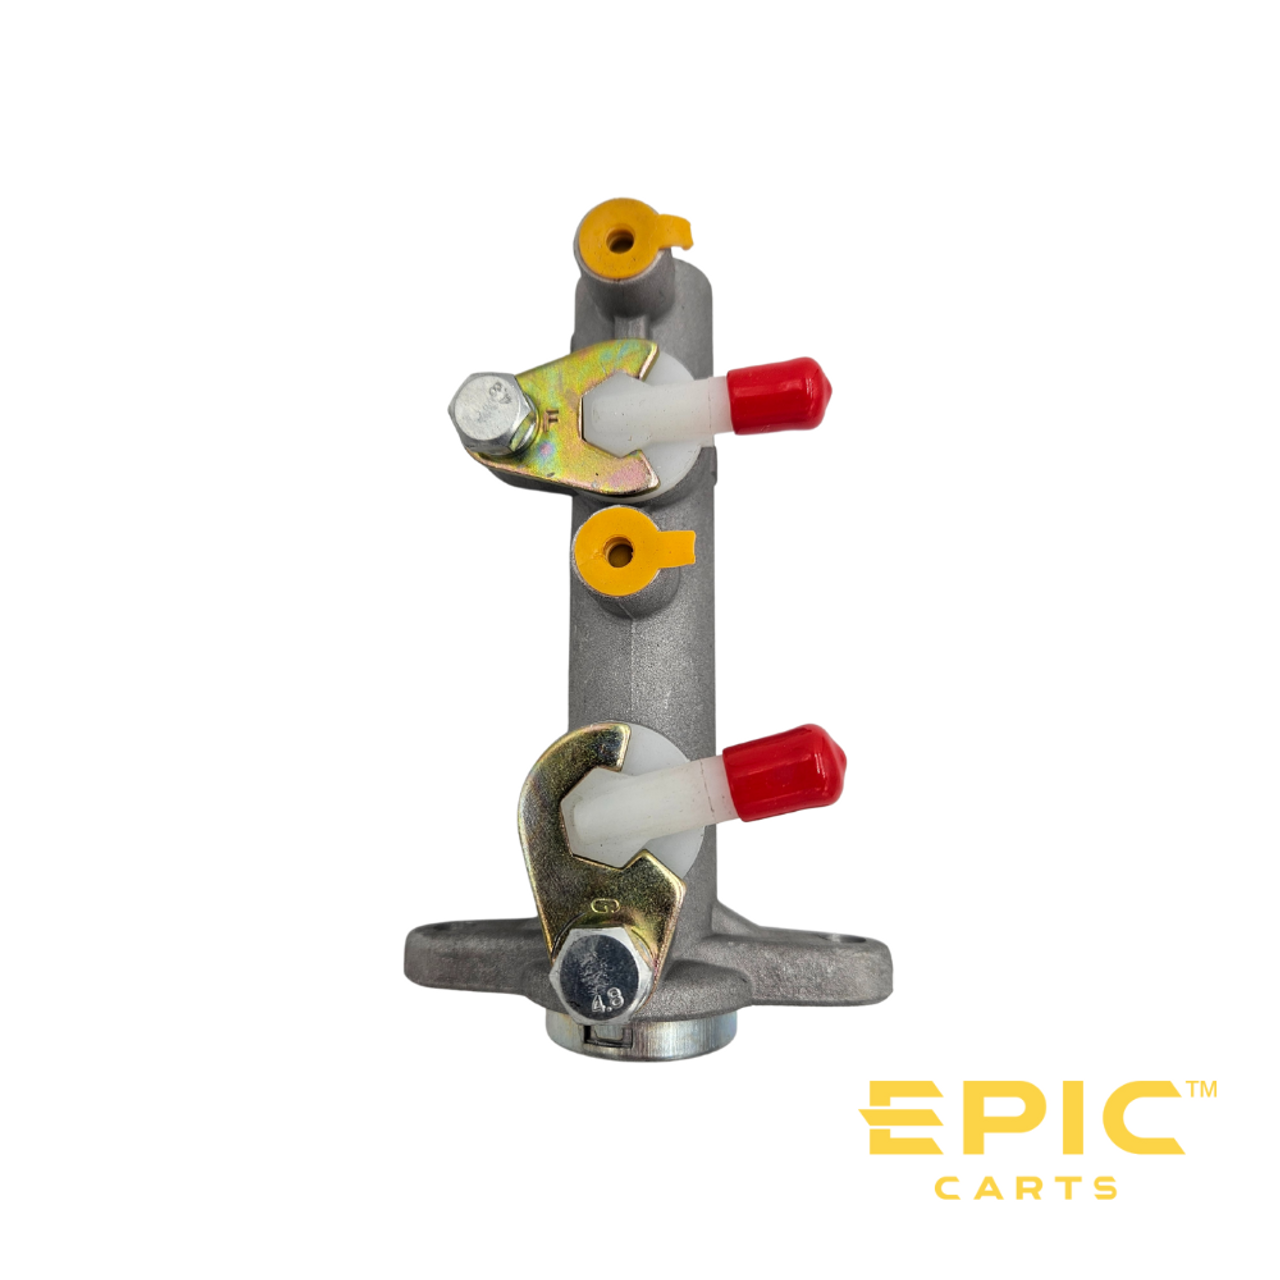 Master Cylinder for EPIC Golf Carts, BRAK-EP506, 3103021882